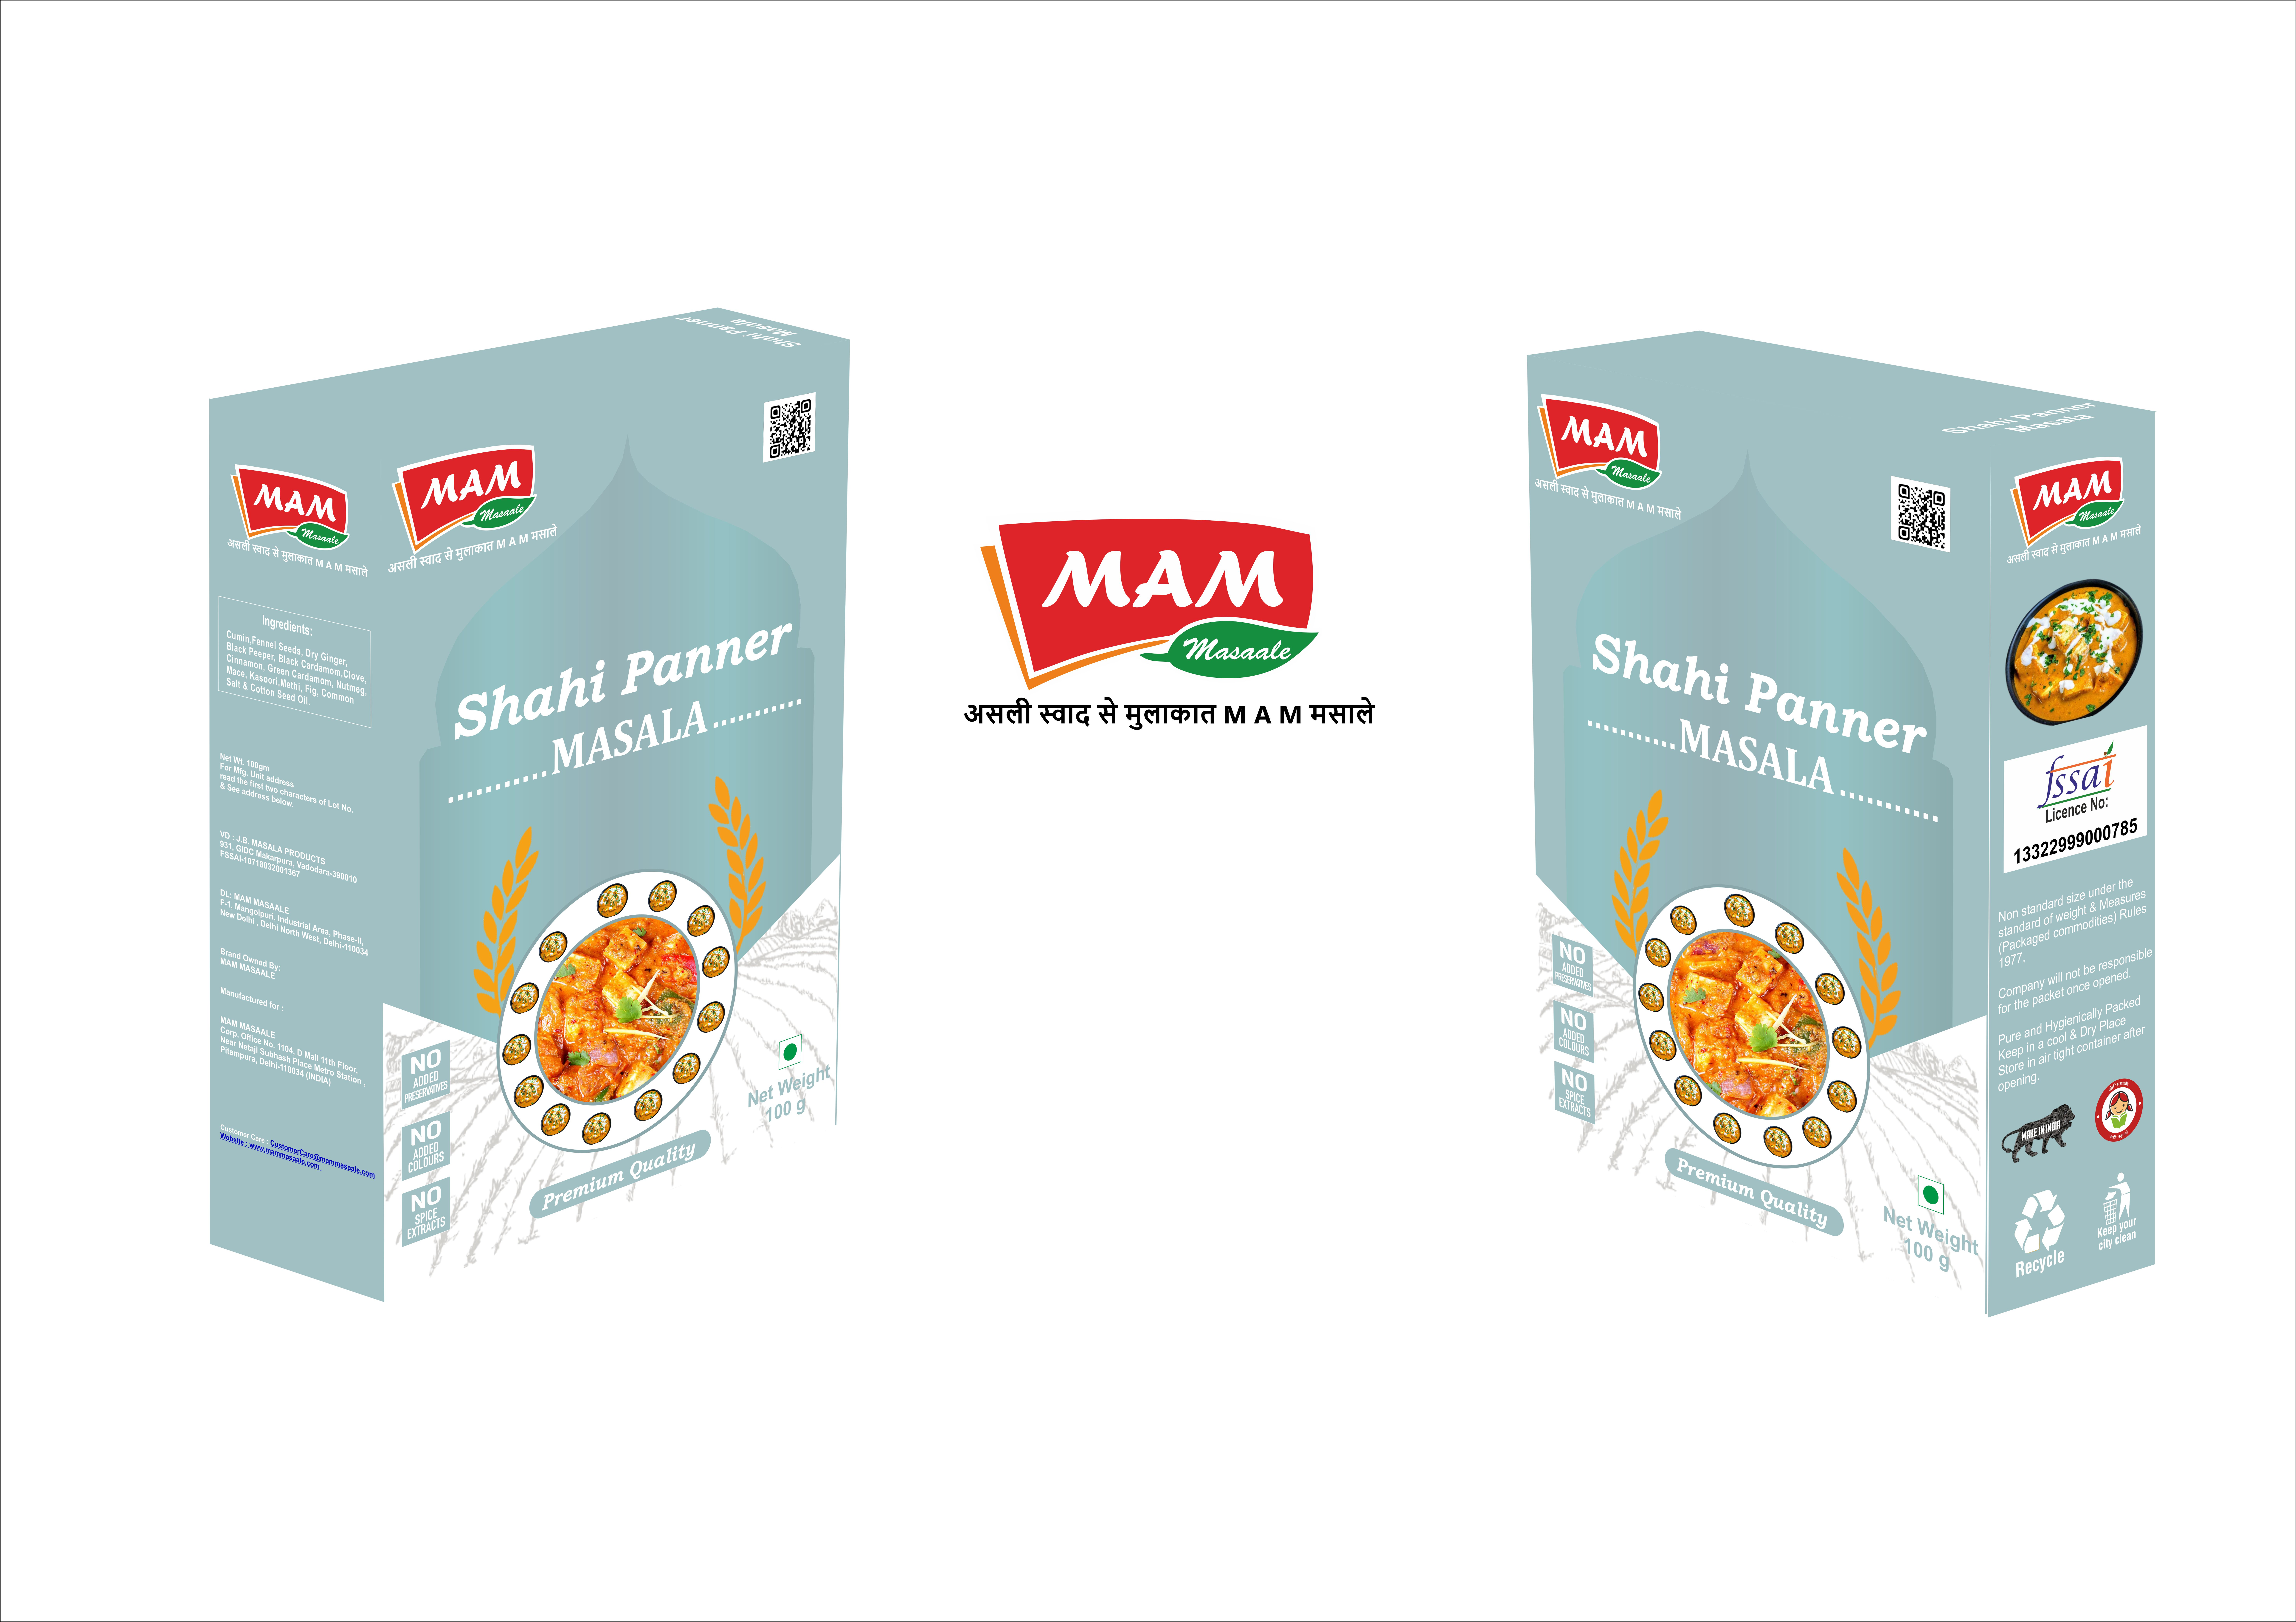 Shahi Paneer Masala | Masala Companies | Spice India - Mammasaale